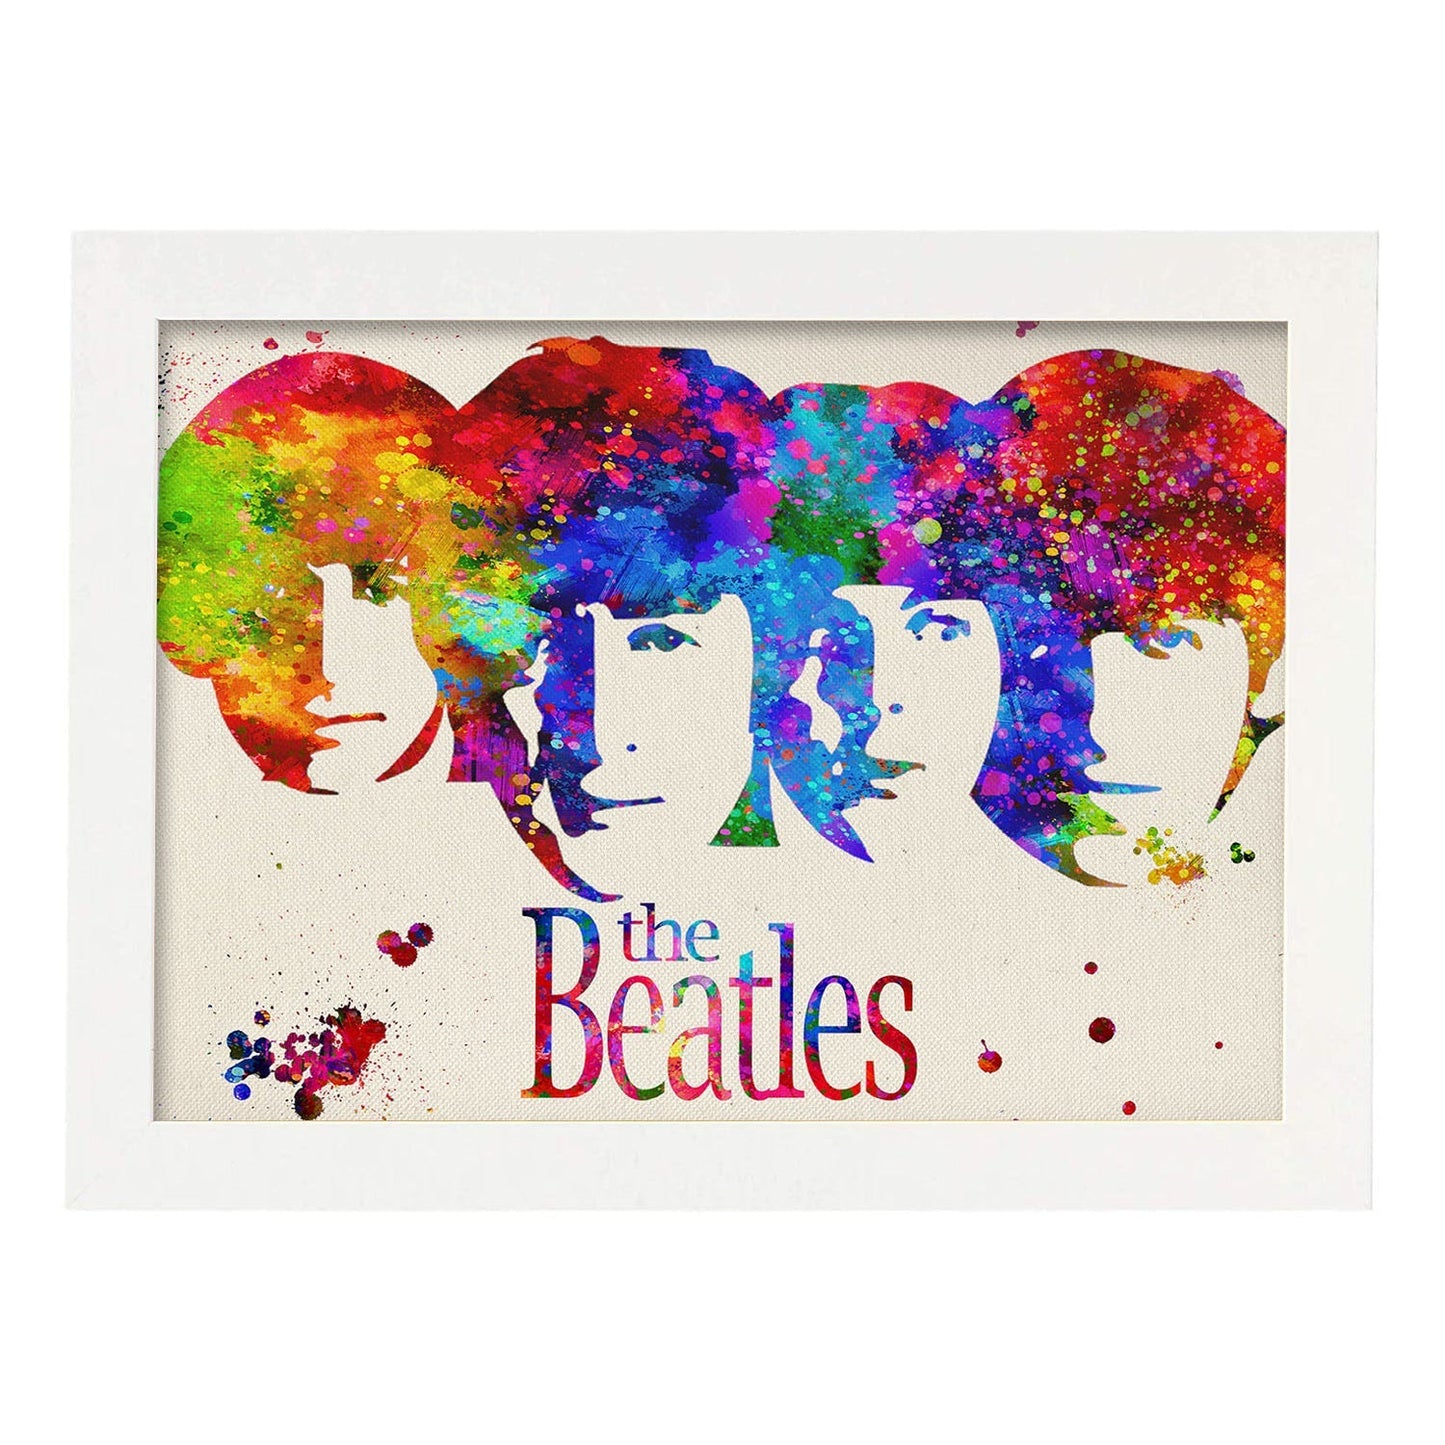 Lámina de la banda de música The Beatles (caras) en Poster estilo explosión de color . Papel 250 gr alta calidad.-Artwork-Nacnic-A4-Marco Blanco-Nacnic Estudio SL